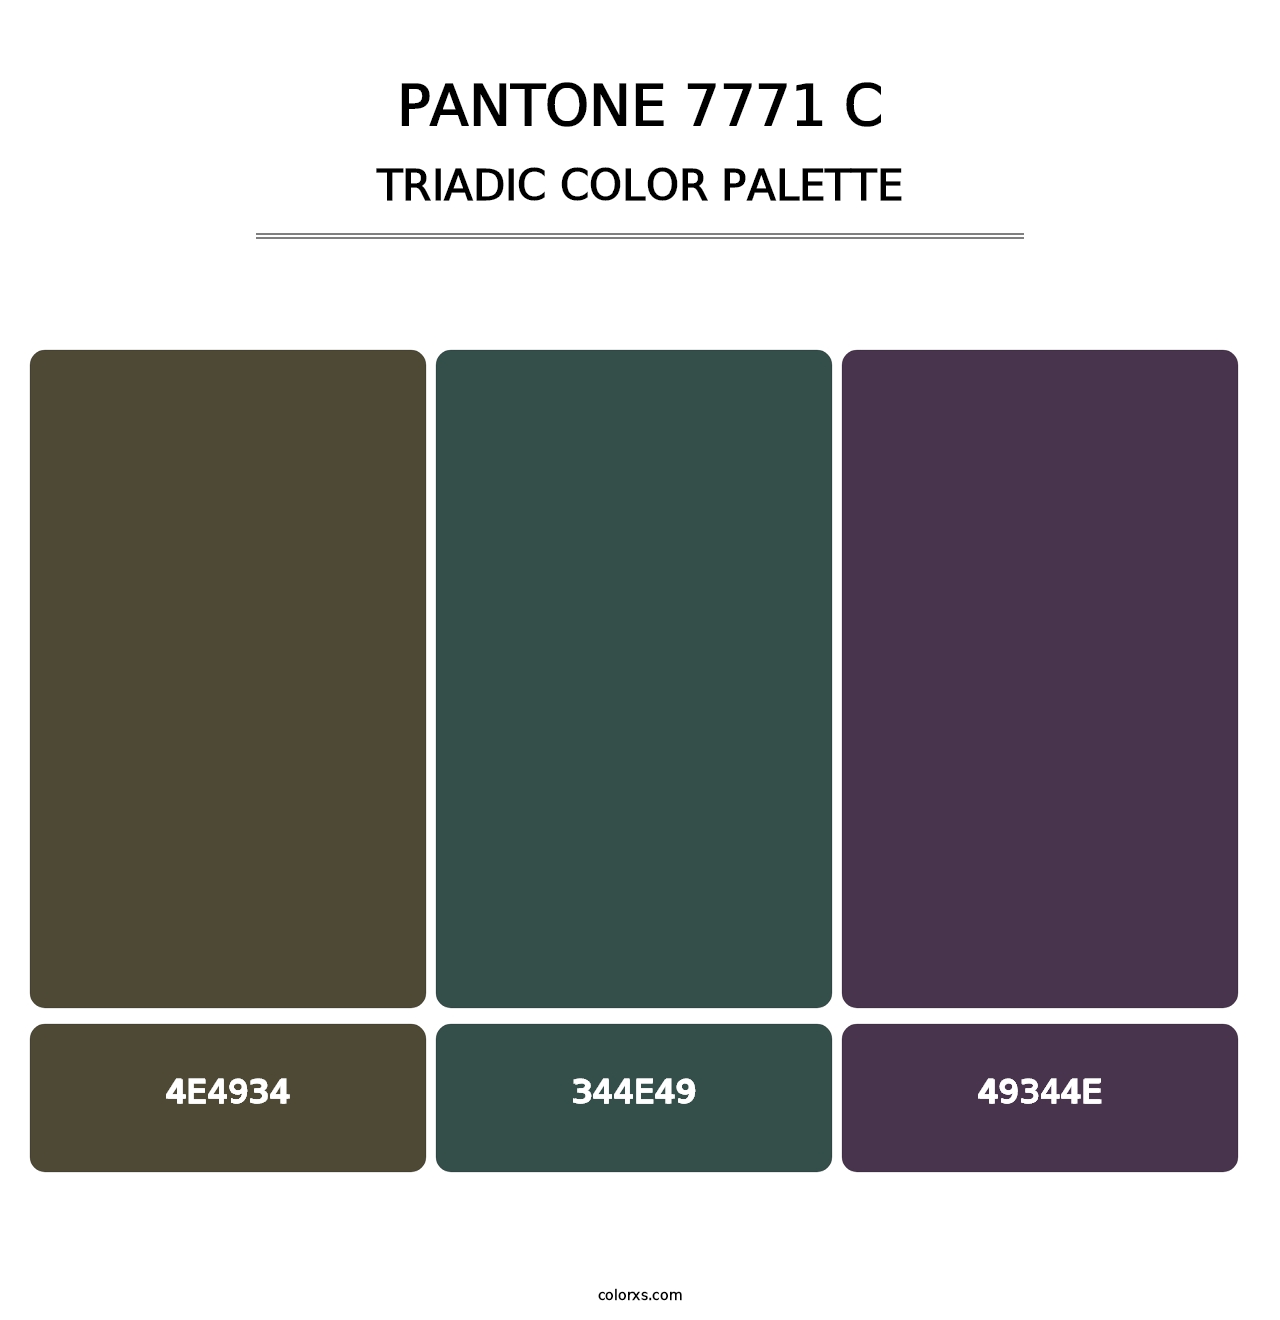 PANTONE 7771 C - Triadic Color Palette